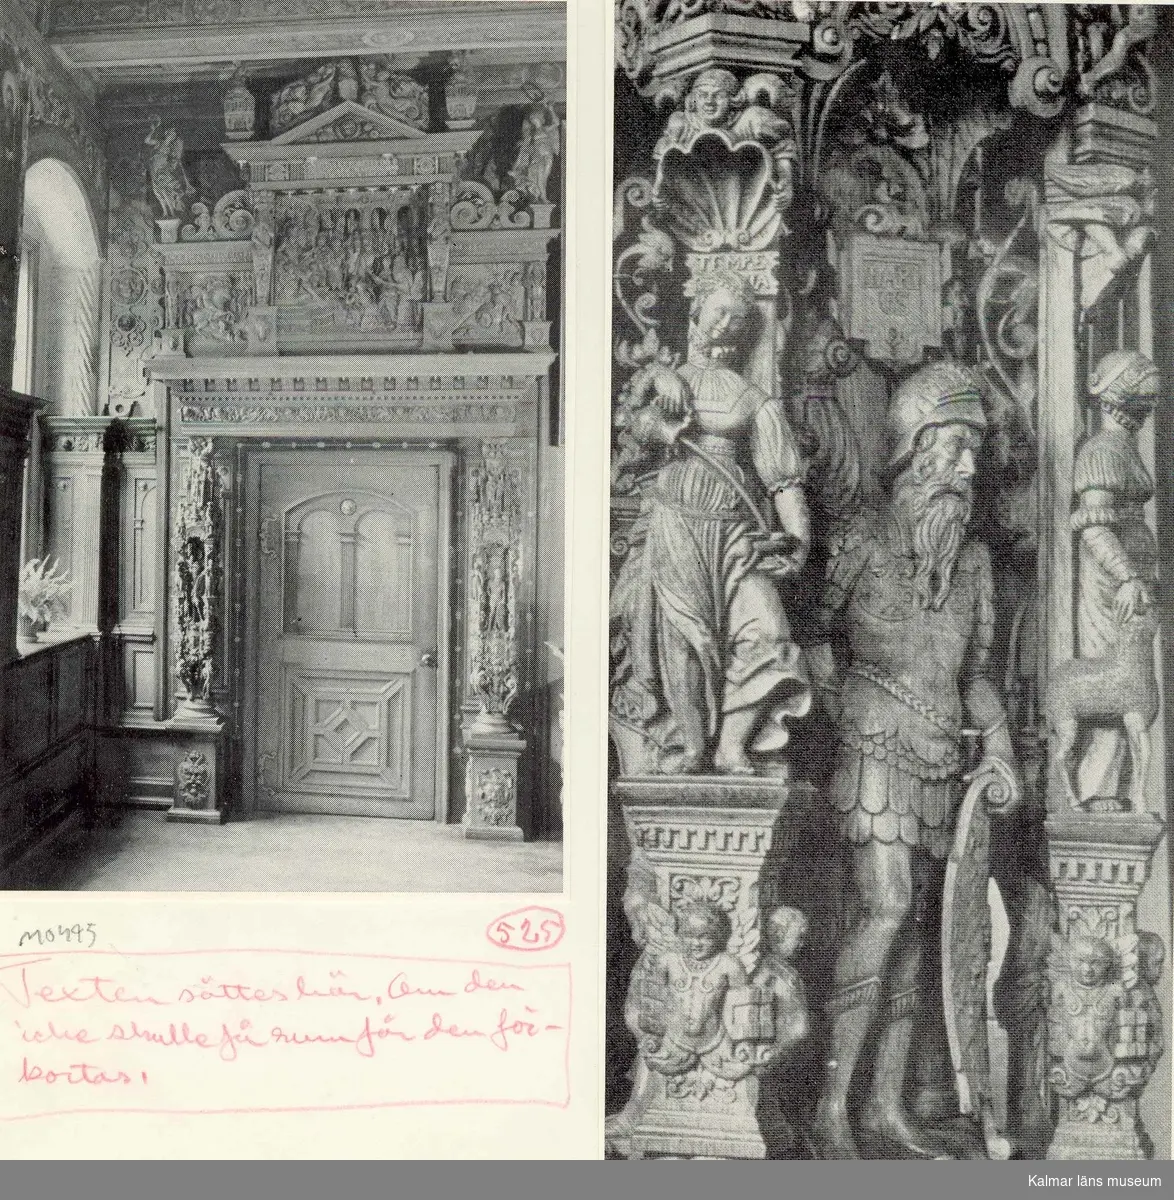 Dörrparti i Grosse Ratsstube av Albert van Soest. Inredningen utfördes 1566-1578.  Till höger detalj av en annan av rummets likartade dörromfattningar.
På vissa plåtar har Martin Olsson klistrat eltejp för att markera hur bilden skulle beskäras i boken.